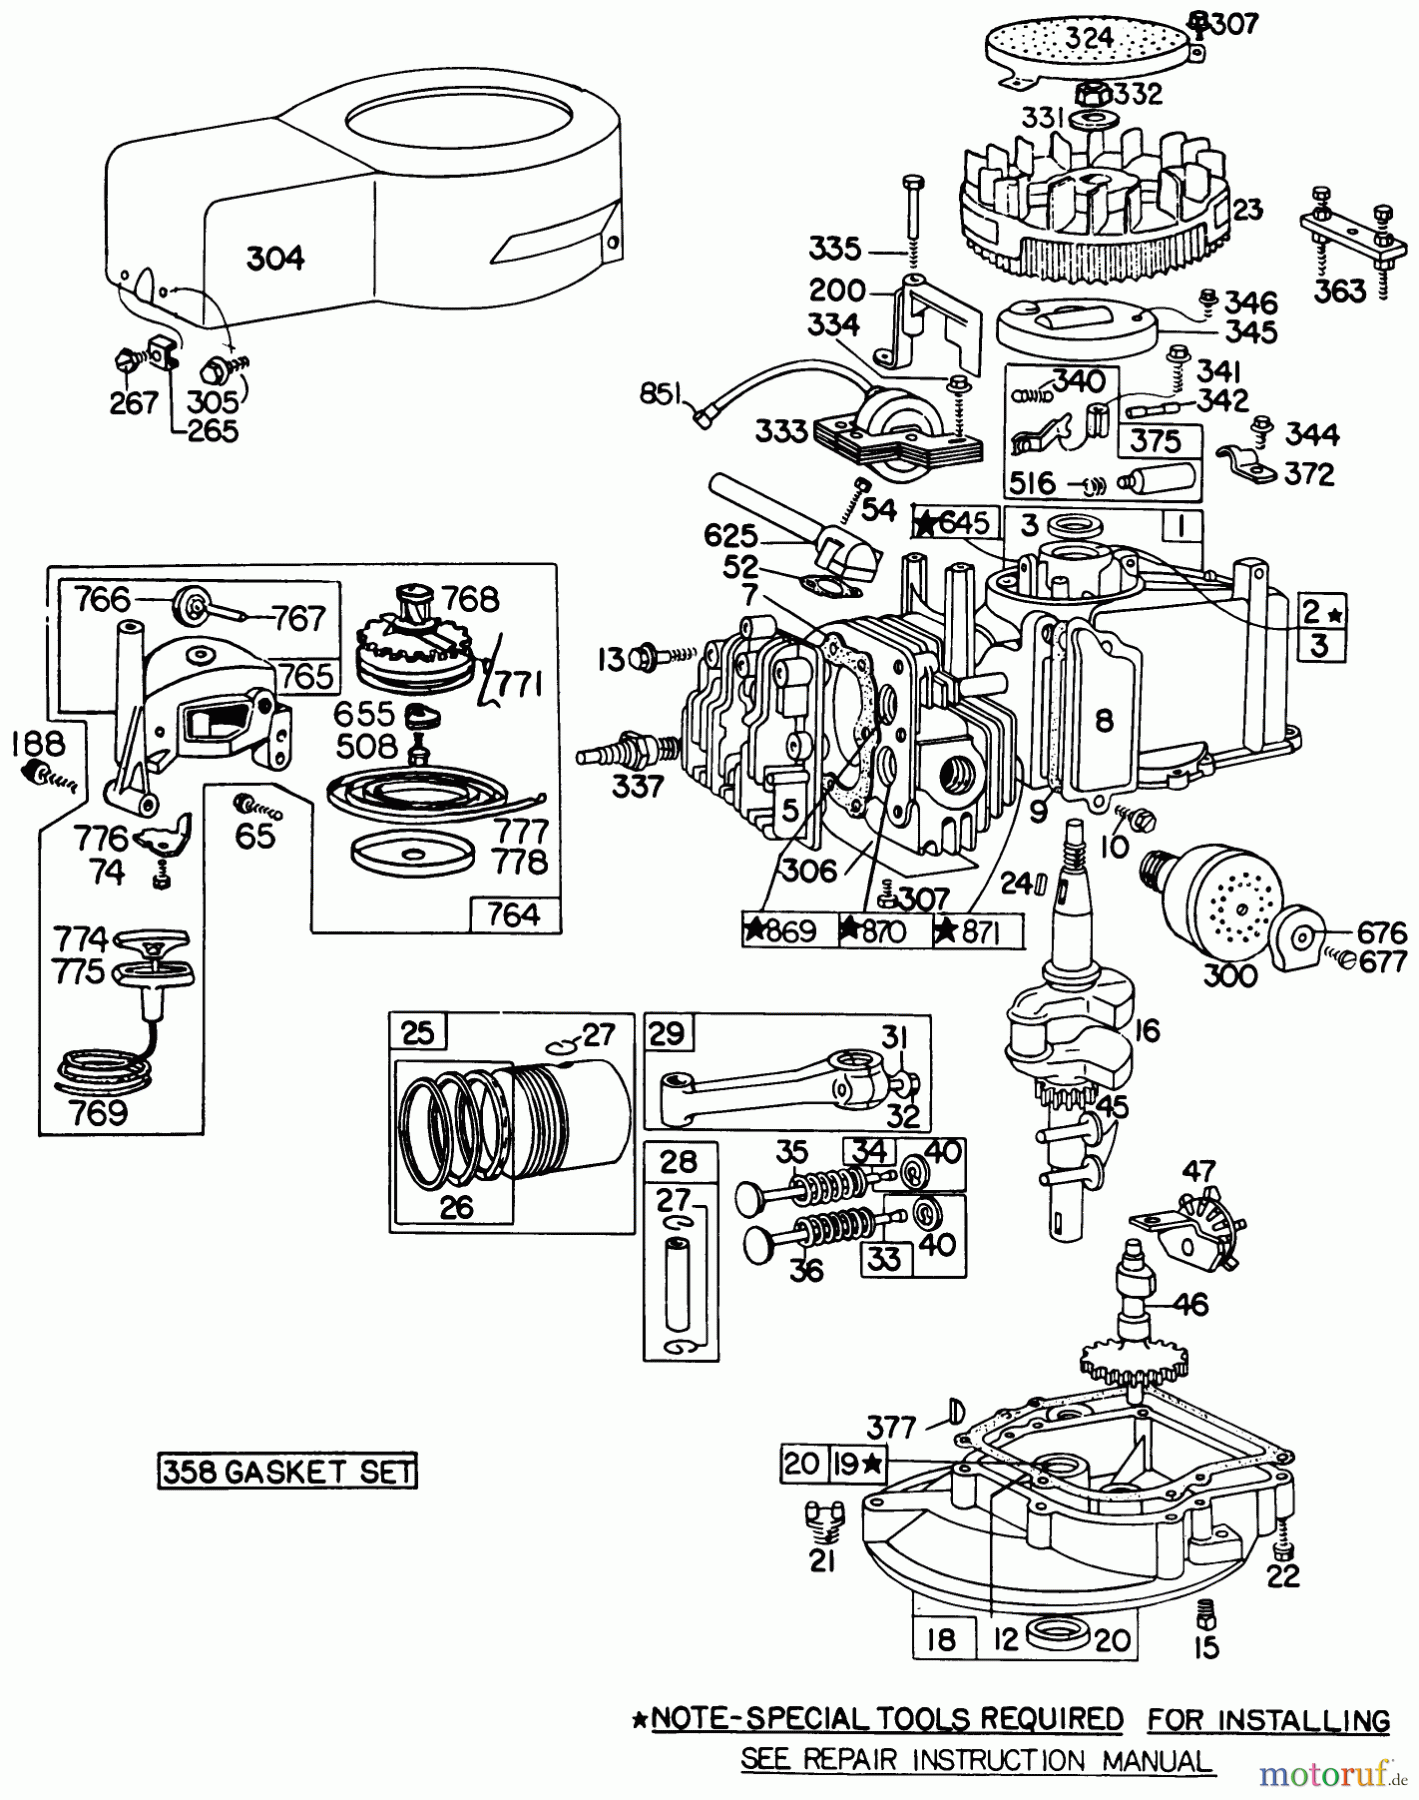  Toro Neu Mowers, Walk-Behind Seite 1 20698 - Toro Lawnmower, 1980 (0000001-0999999) ENGINE BRIGGS & STRATTON MODEL NO. 92908-2054-01